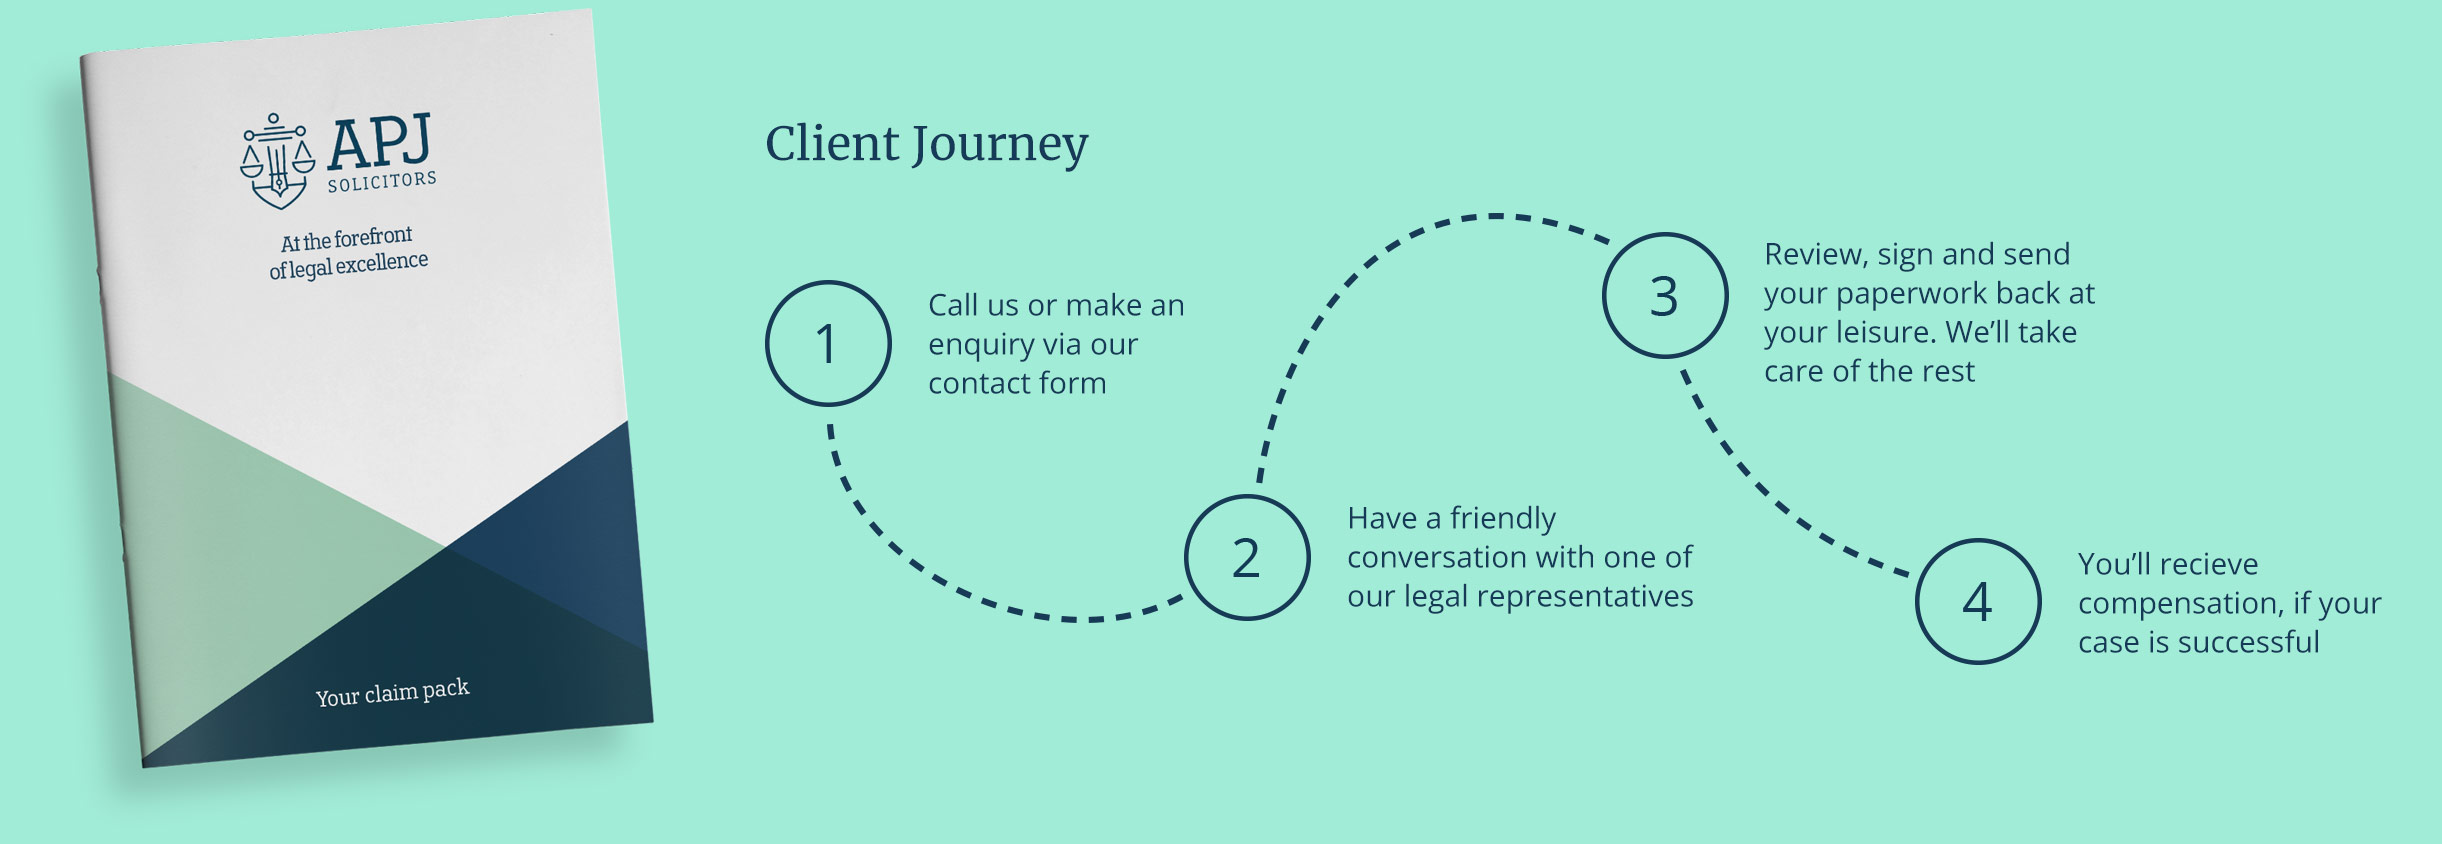 client journey